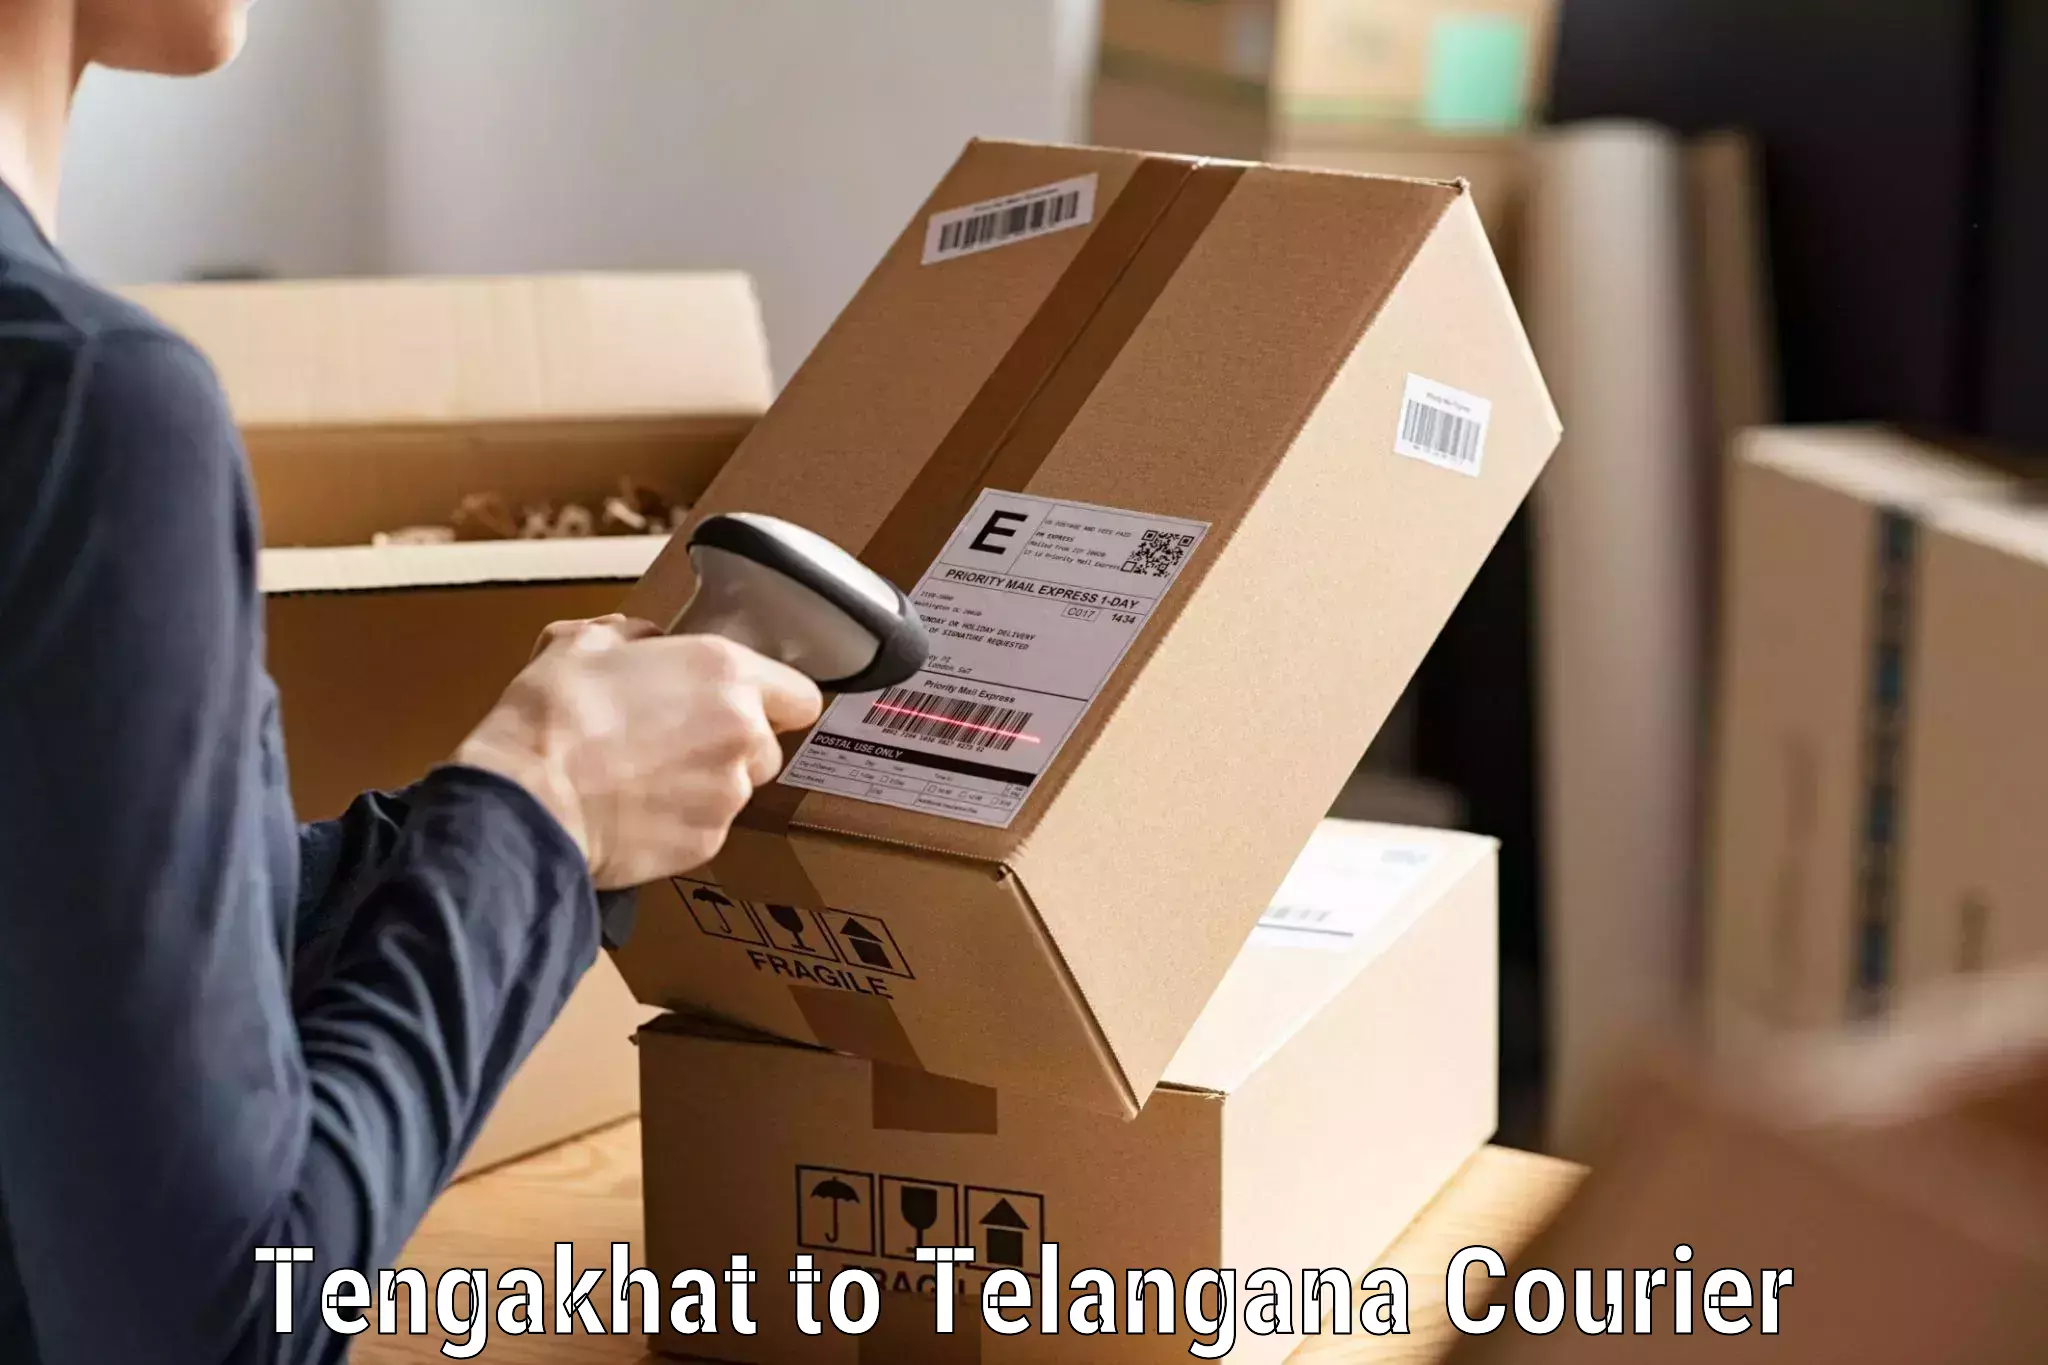 24-hour courier services Tengakhat to Dubbak